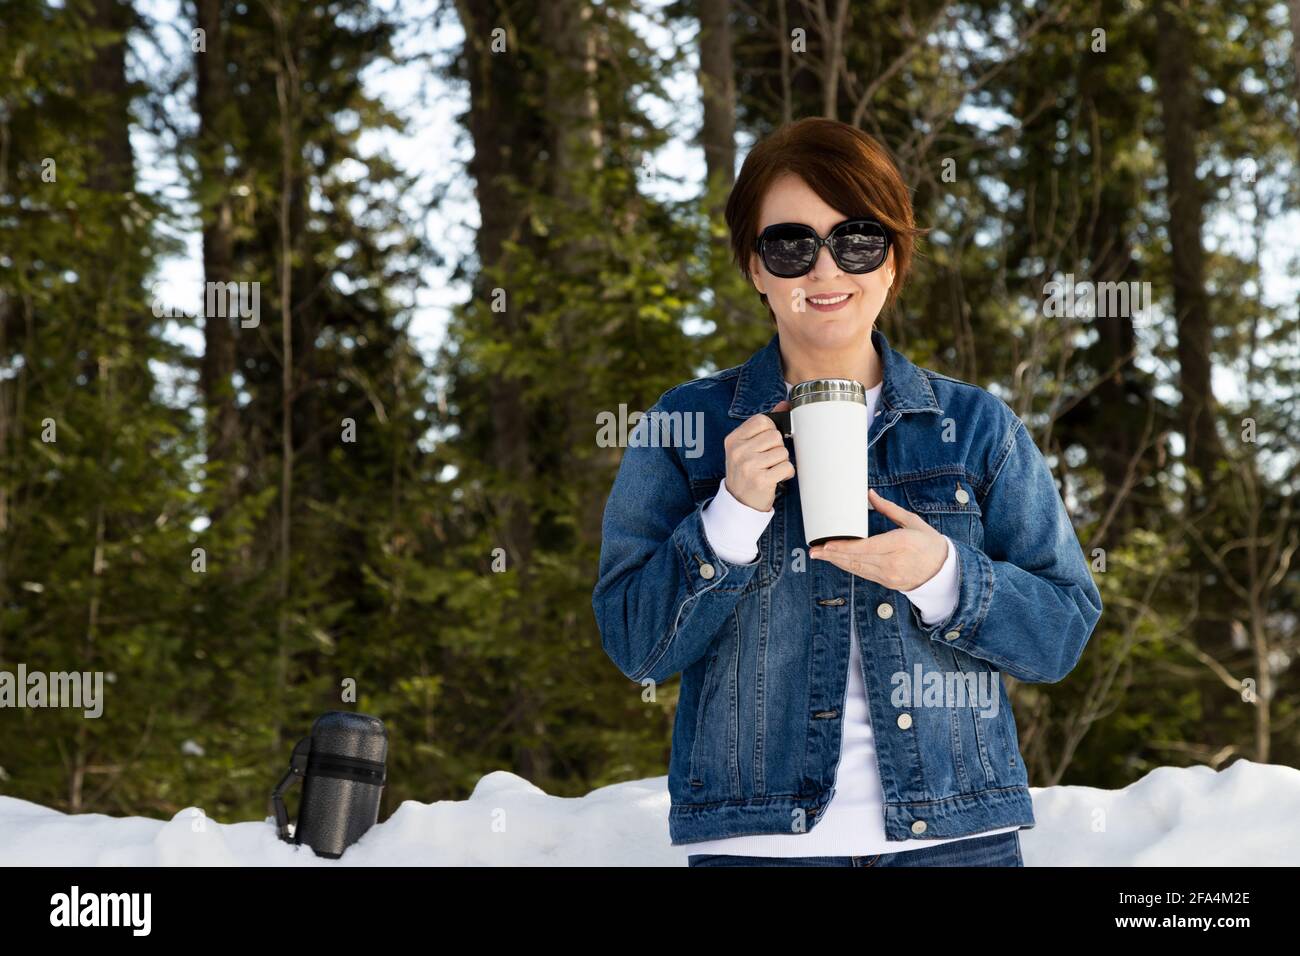 Nachbau einer Frau, die eine Sonnenbrille trägt und einen weißen Reisebecher in einem verschneiten Wald hält. Leere Reise-Kaffeebecher mit Griffschablone, Modell mockup Stockfoto